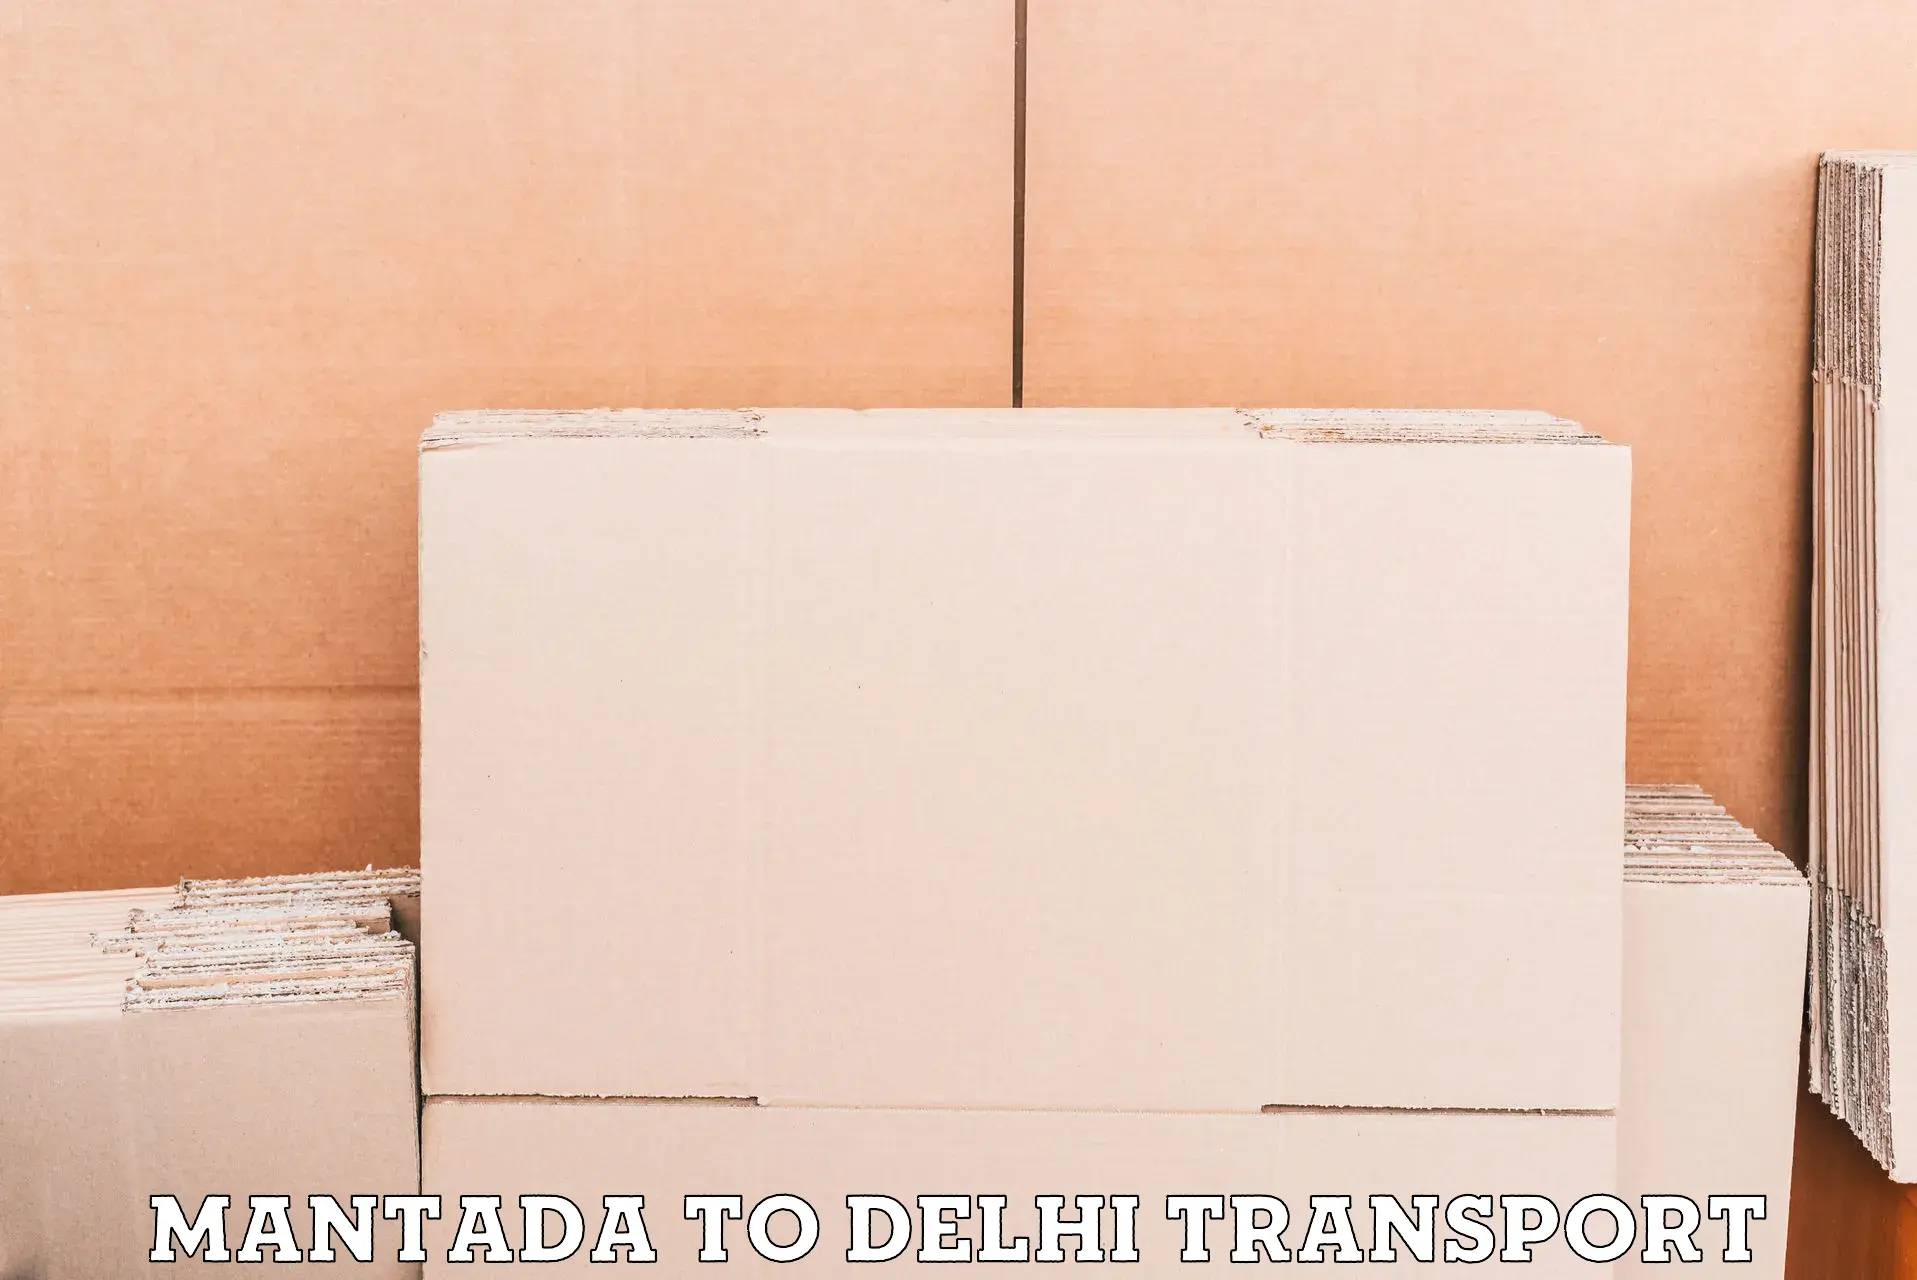 Transport in sharing in Mantada to NIT Delhi